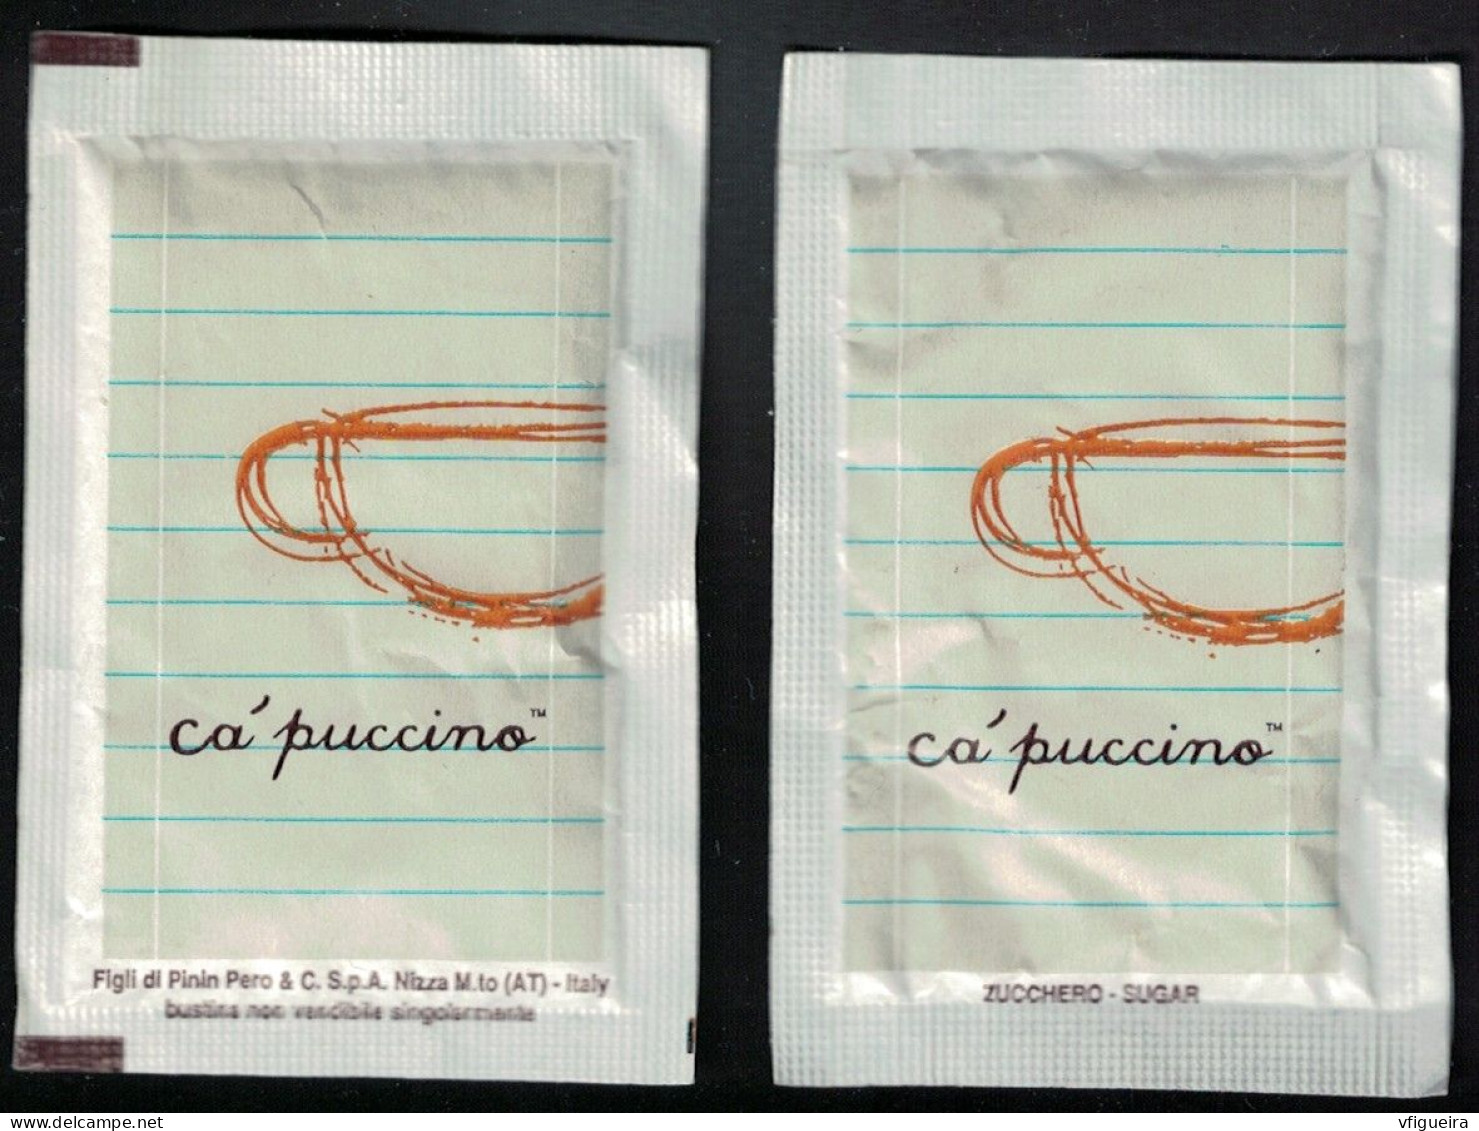 Italie Sachet Sucre Sugar Bag Capuccino Figli Di Pinin Pero White Blanc - Zucker